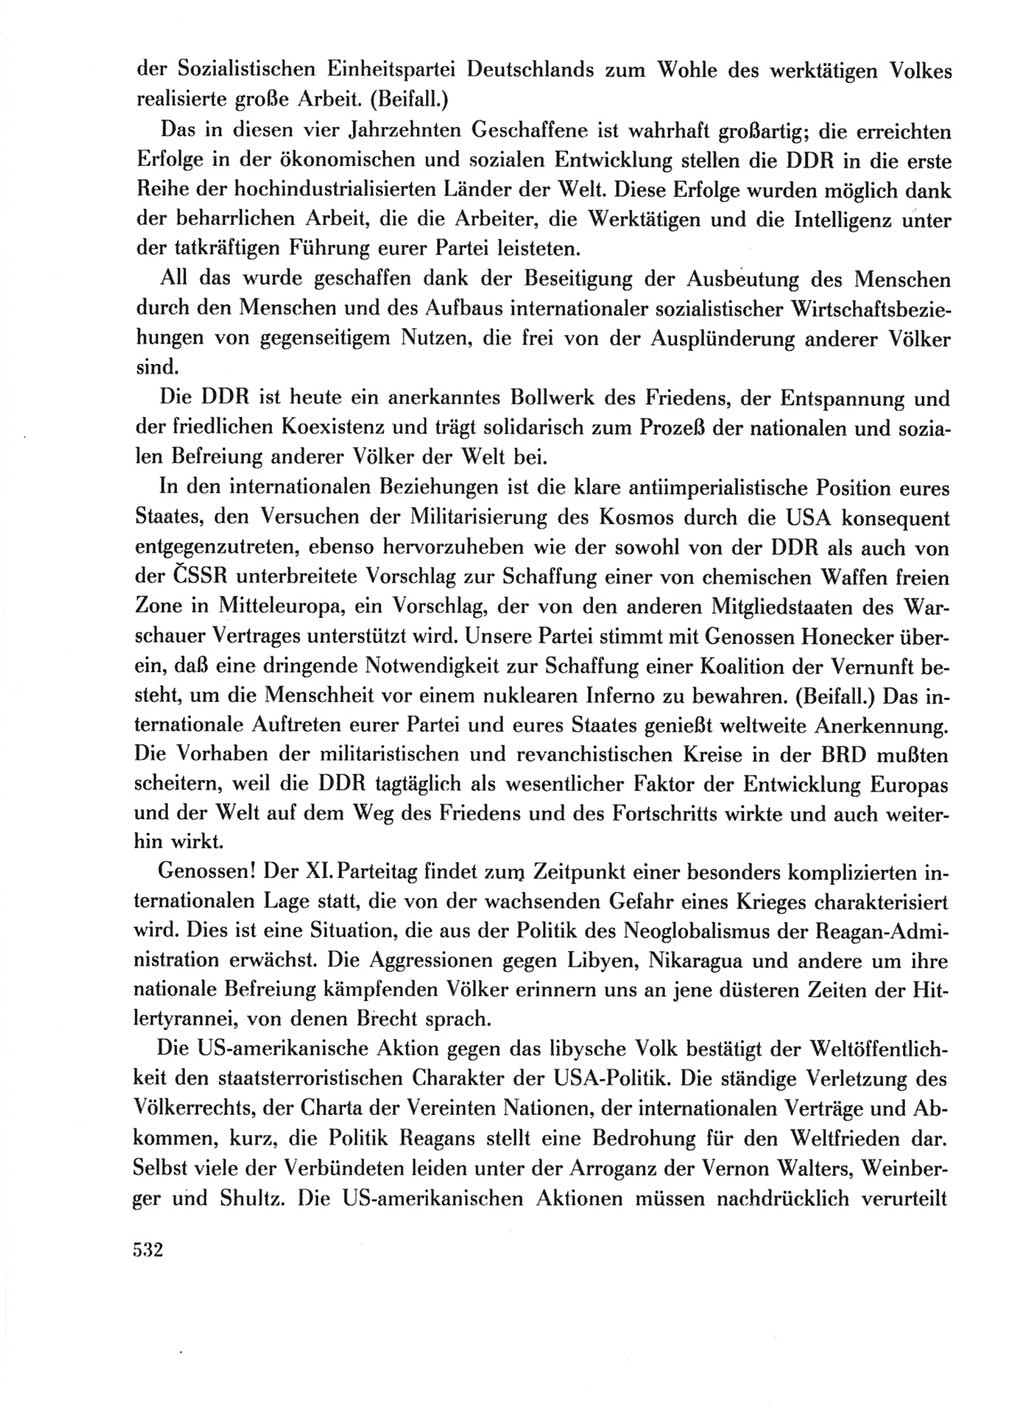 Protokoll der Verhandlungen des Ⅺ. Parteitages der Sozialistischen Einheitspartei Deutschlands (SED) [Deutsche Demokratische Republik (DDR)] 1986, Seite 532